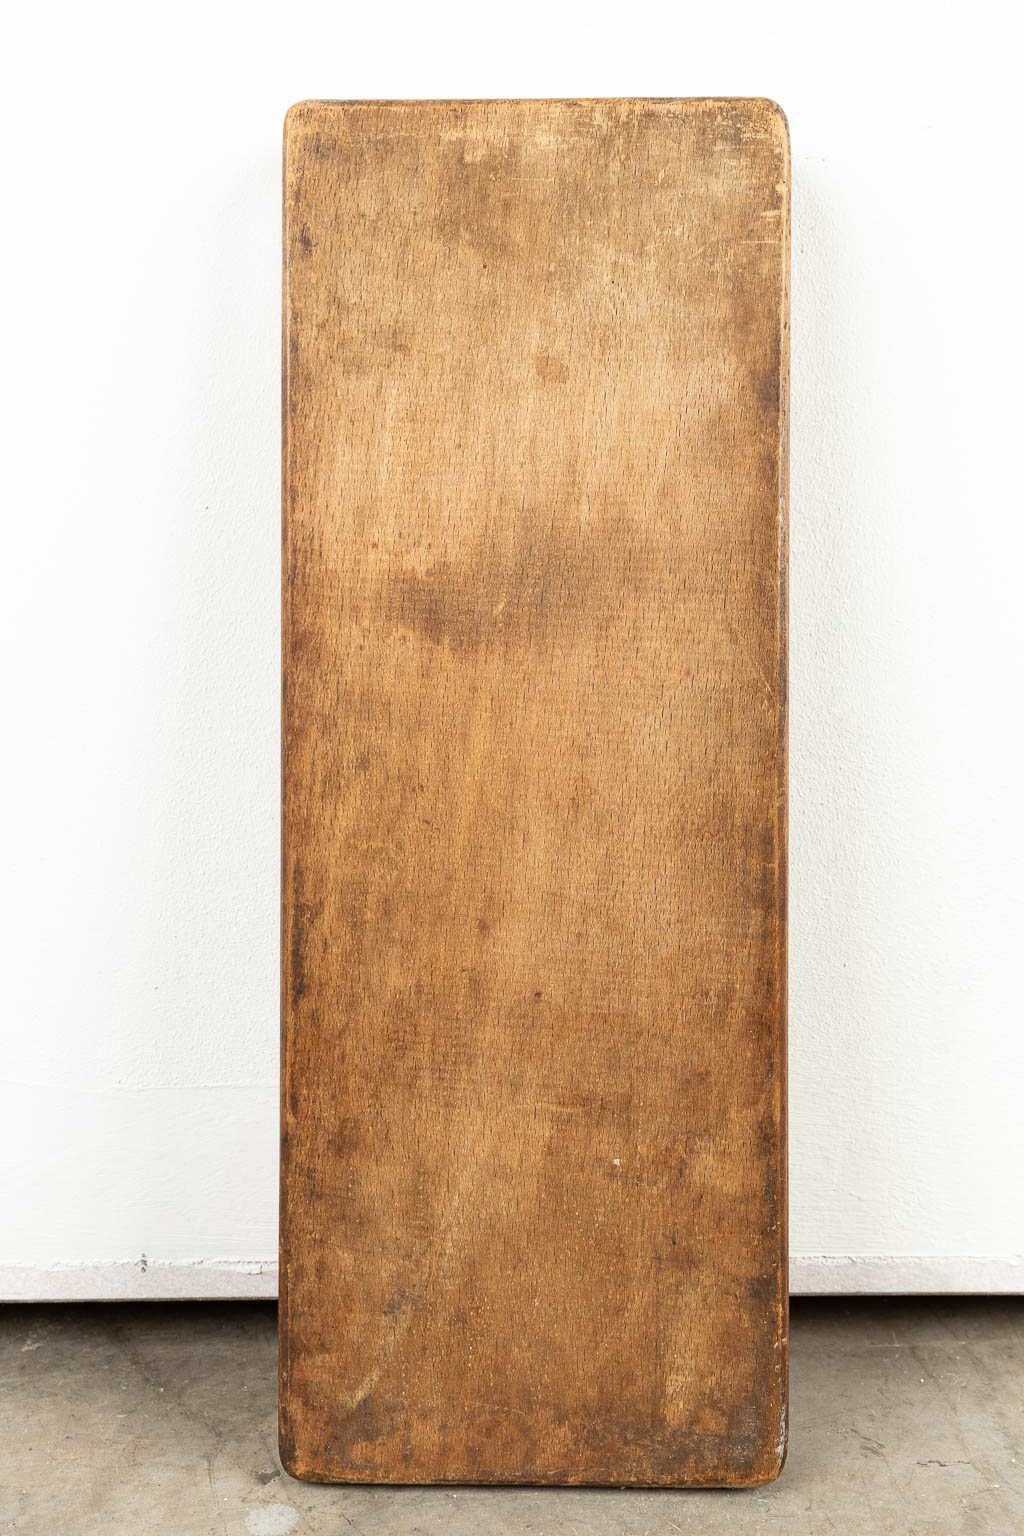 Een collectie van 4 speculaasplanken, gemaakt uit gesculpteerd hout. (H:2,5cm)